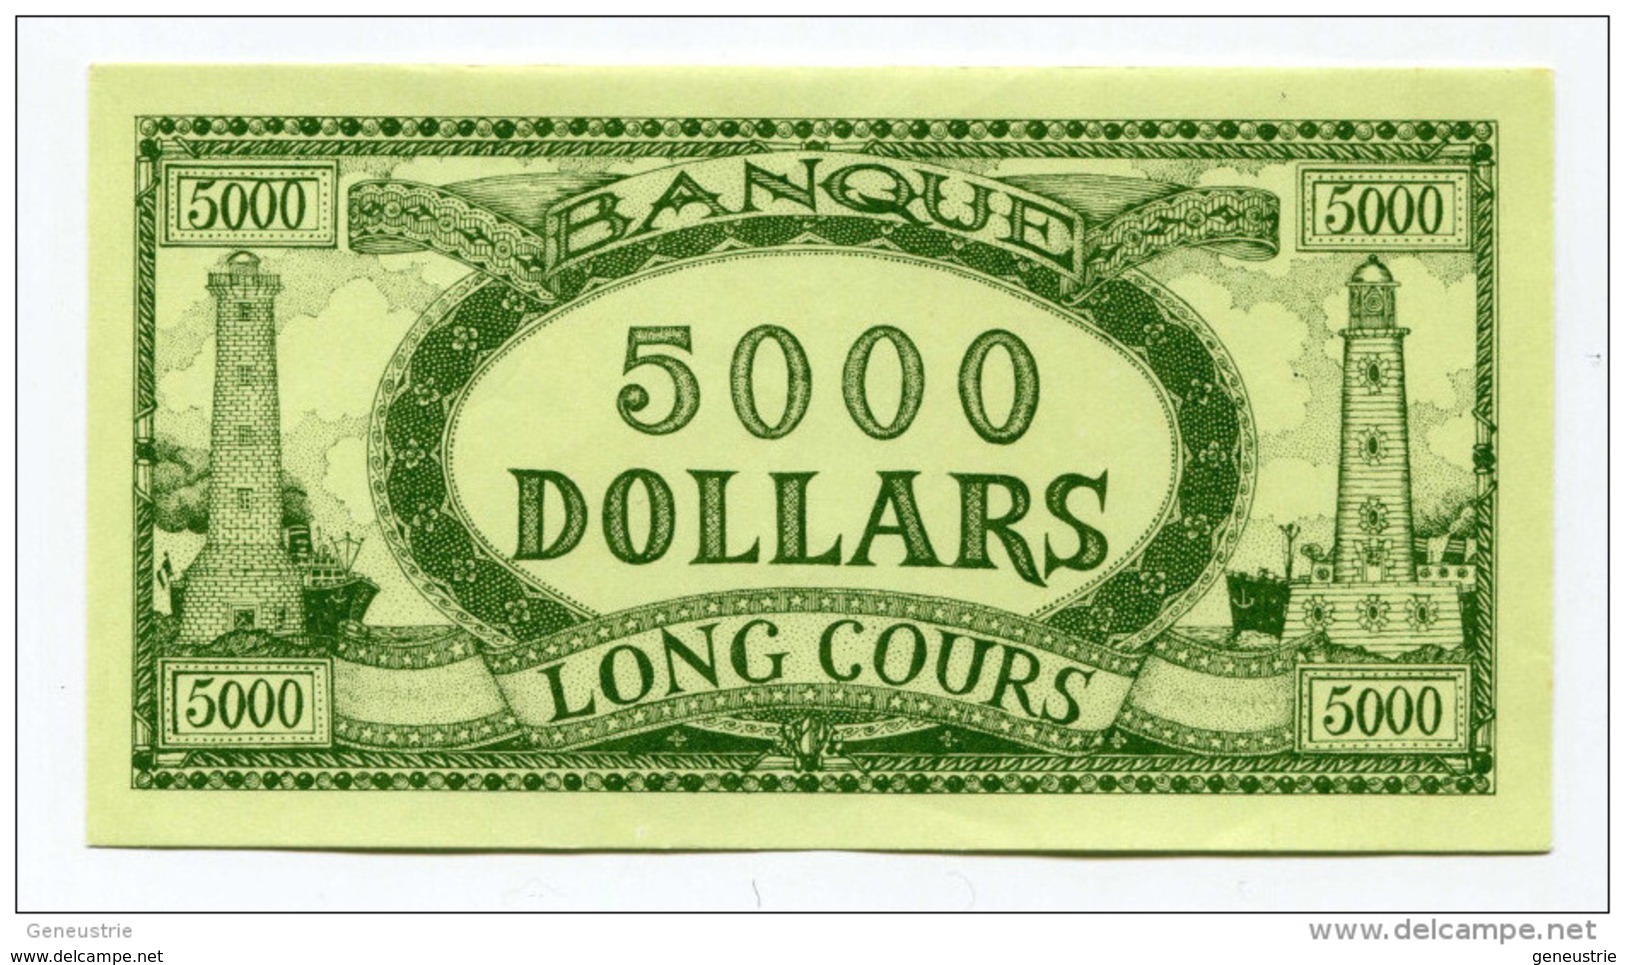 Billet Fictif à Déterminer  "5000 Dollars - Banque Long Cours" Phare - Bateau - Dollar Factice à Déterminer - Ficción & Especímenes